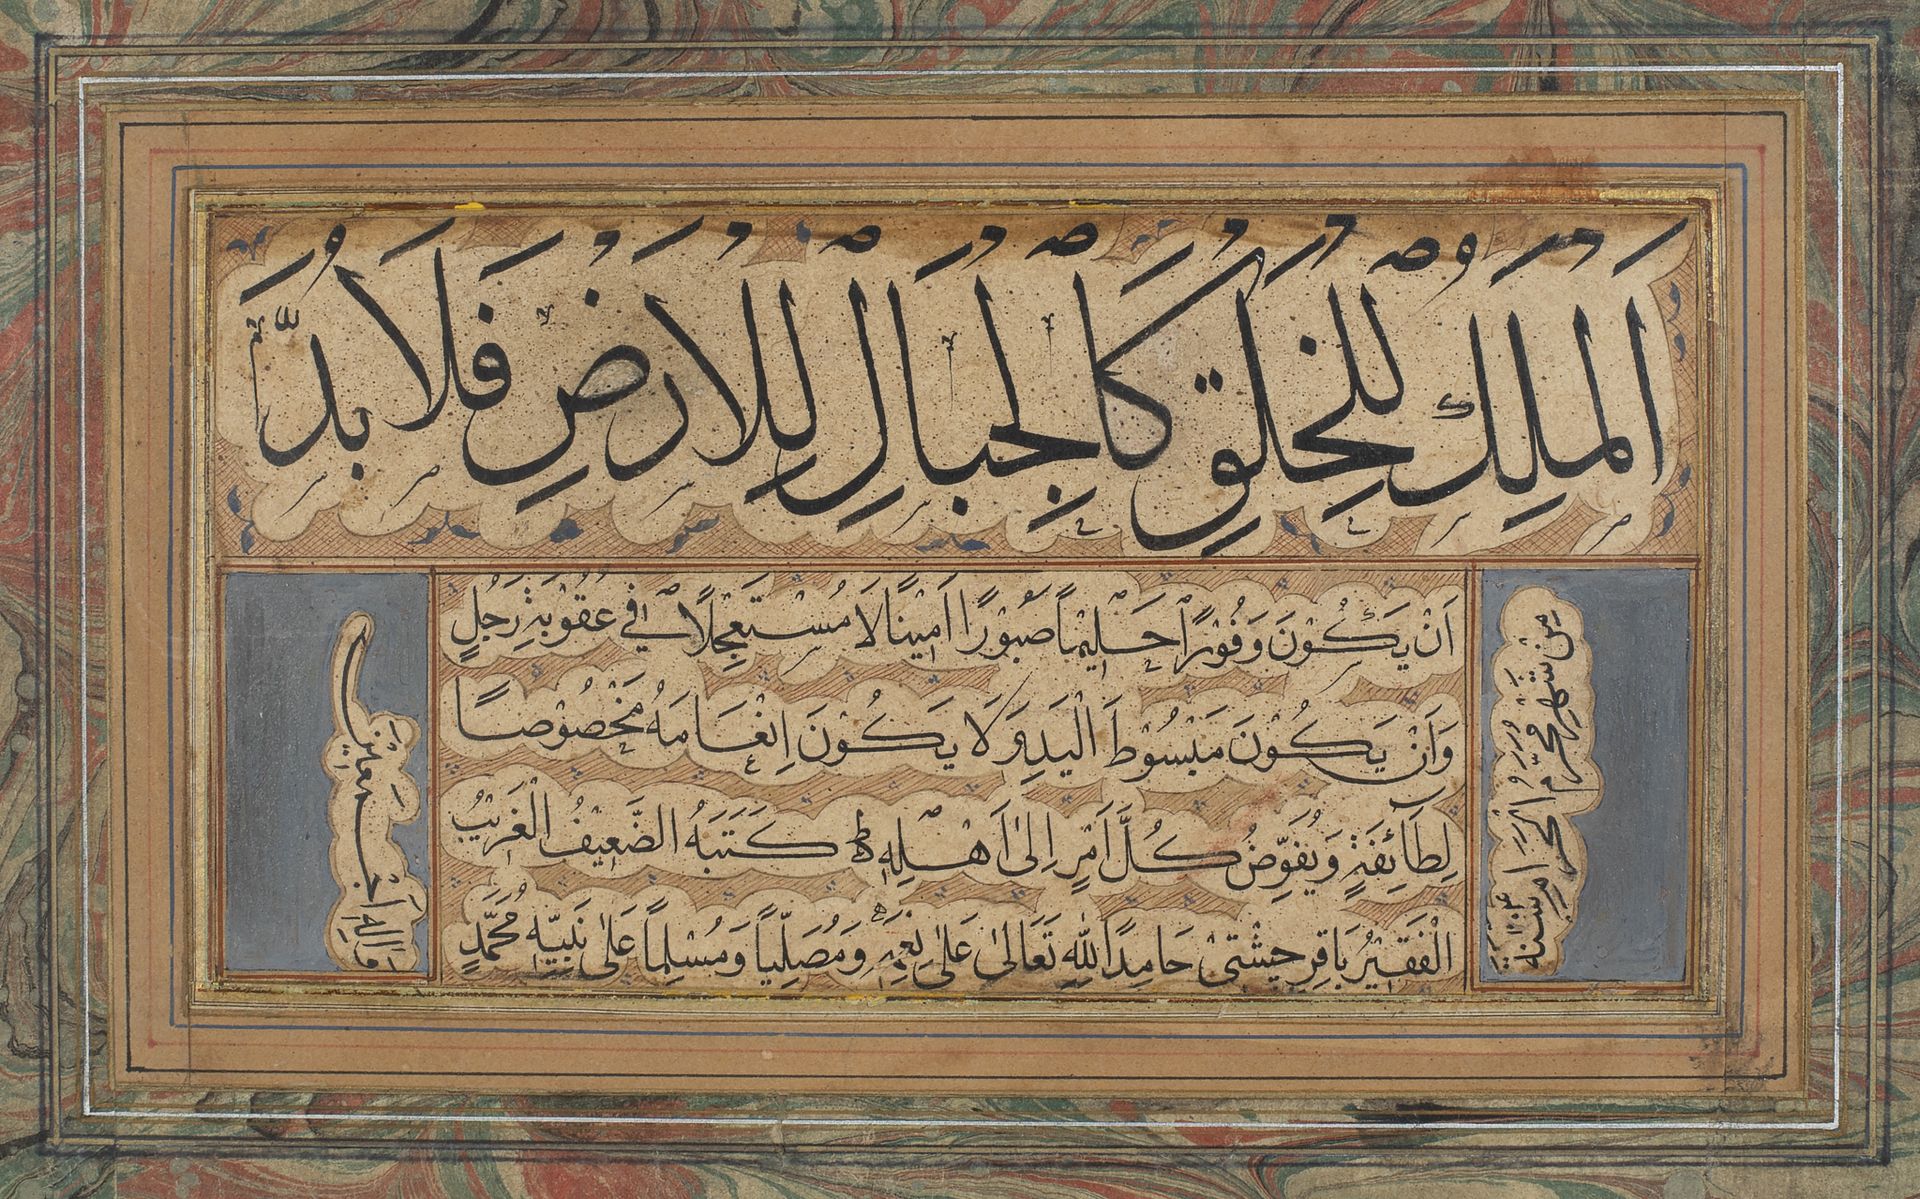 Qita' par Bâqir Tsheshti Hamid en 1214H. ('''=1799) An ottoman Calligraphic exer&hellip;